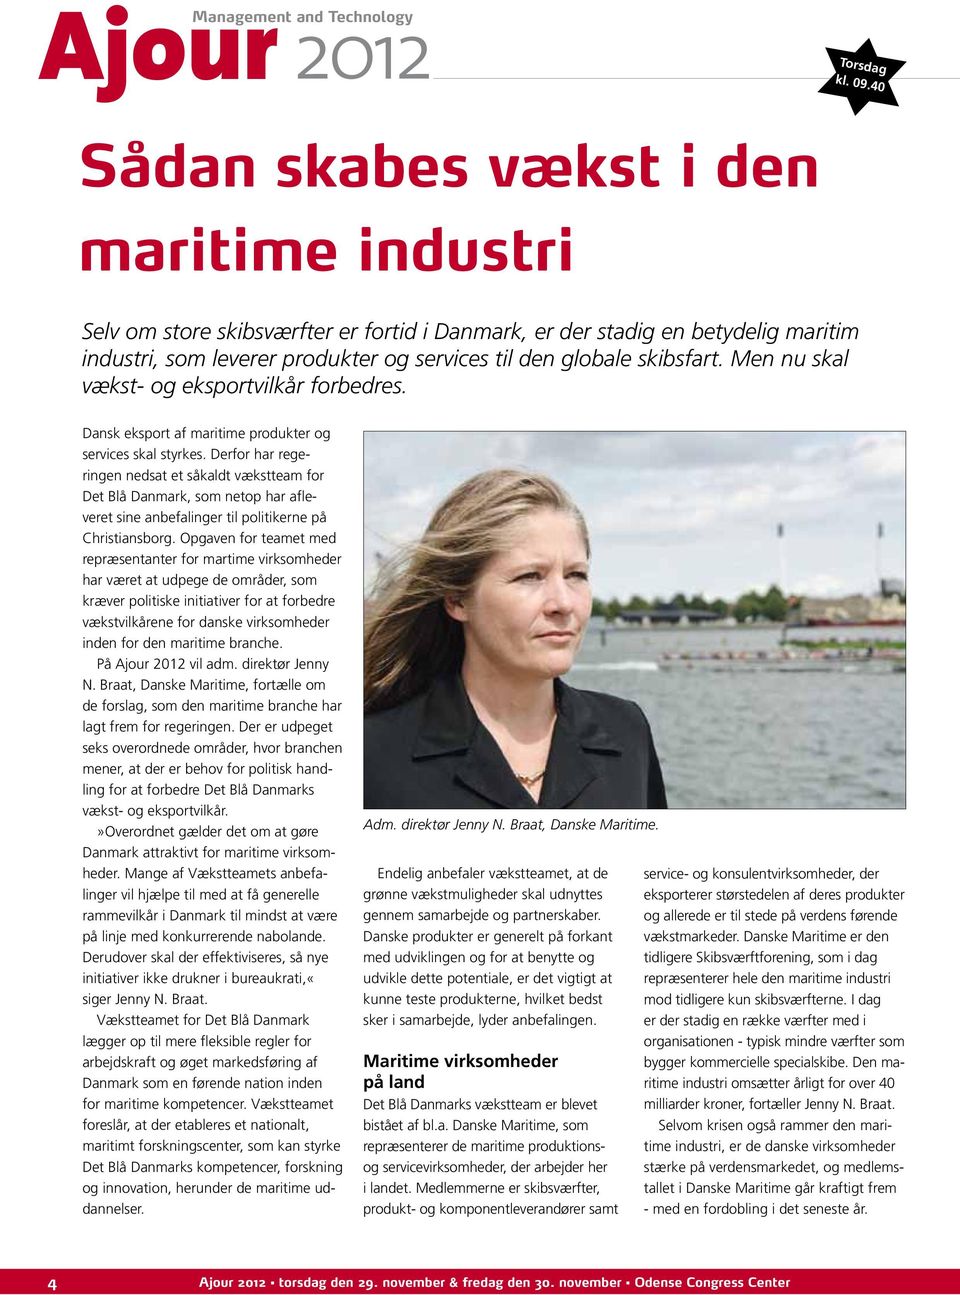 Men nu skal vækst- og eksportvilkår forbedres. Dansk eksport af maritime produkter og services skal styrkes.